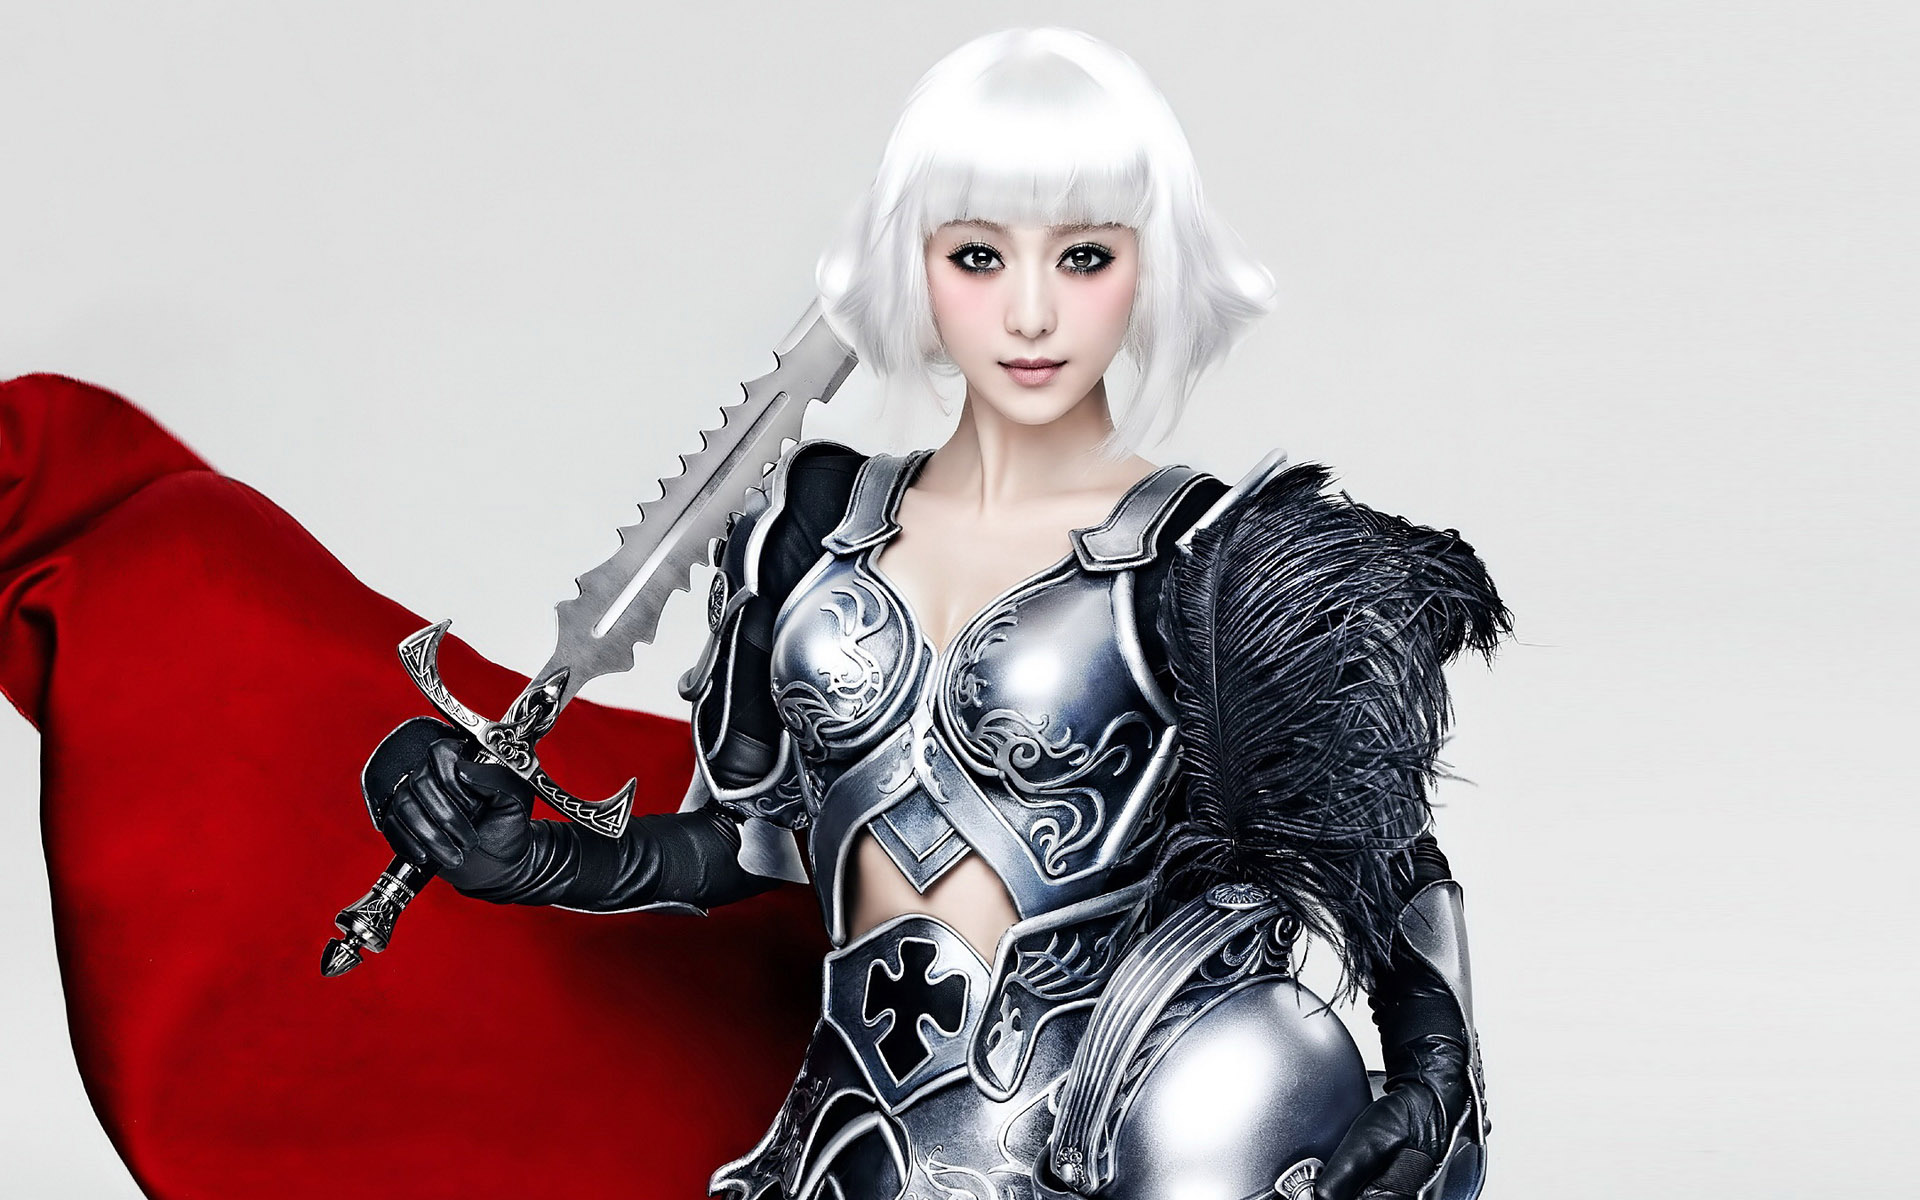 Female warrior in armor wielding a sword - HD desktop wallpaper.